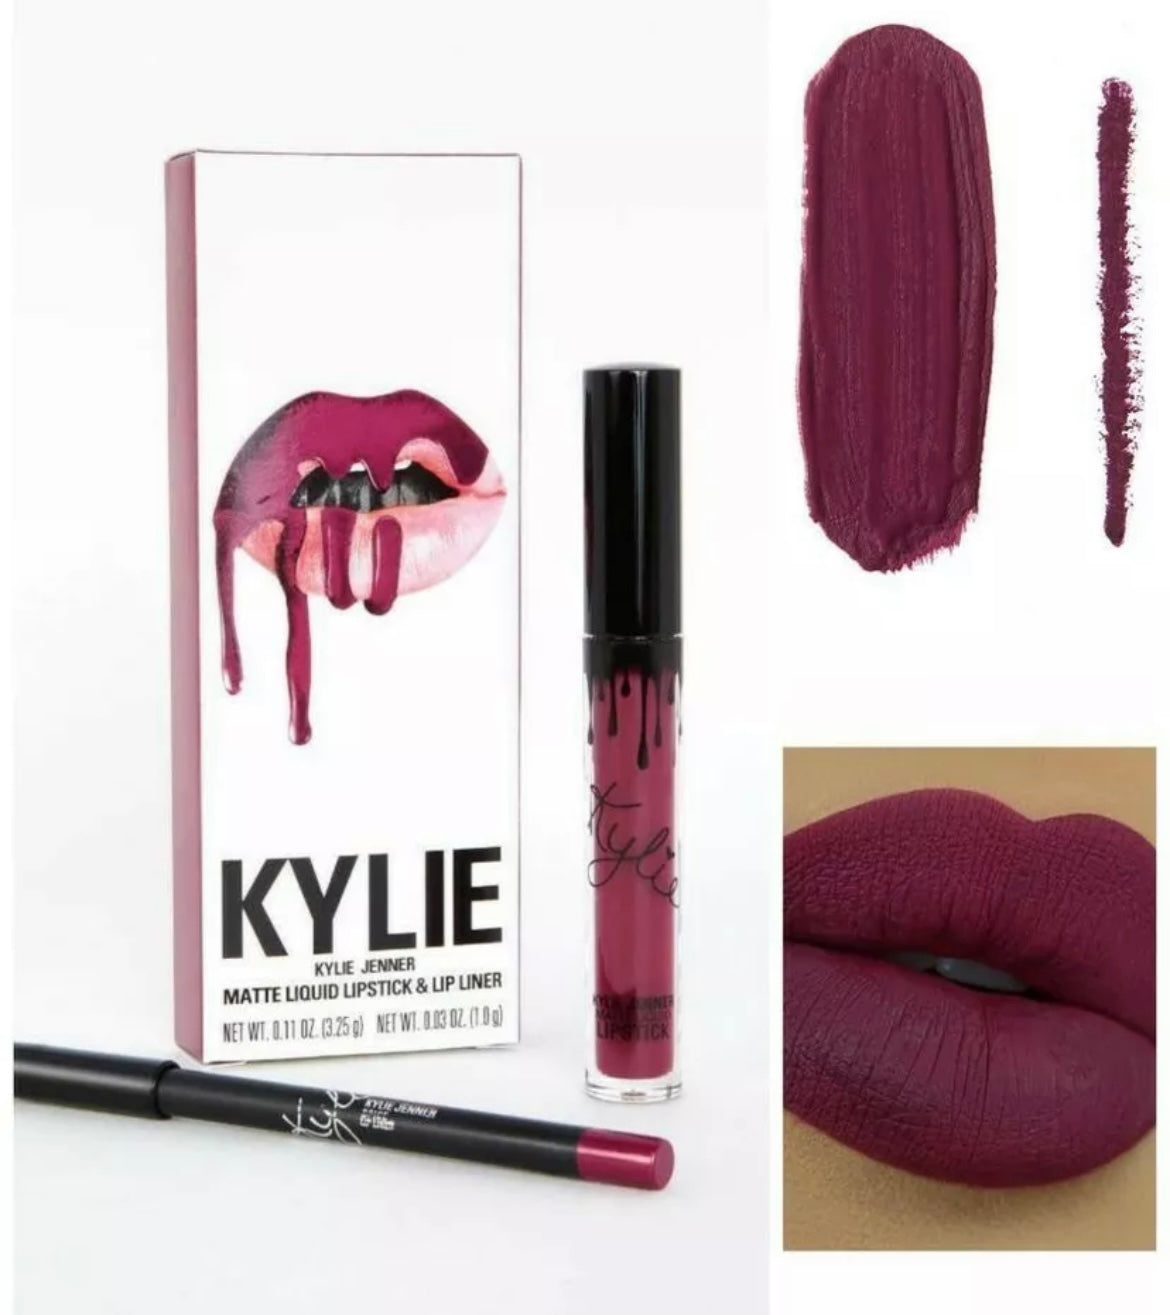 Official Kylie Jenner Matte Lipstick Kit Spice